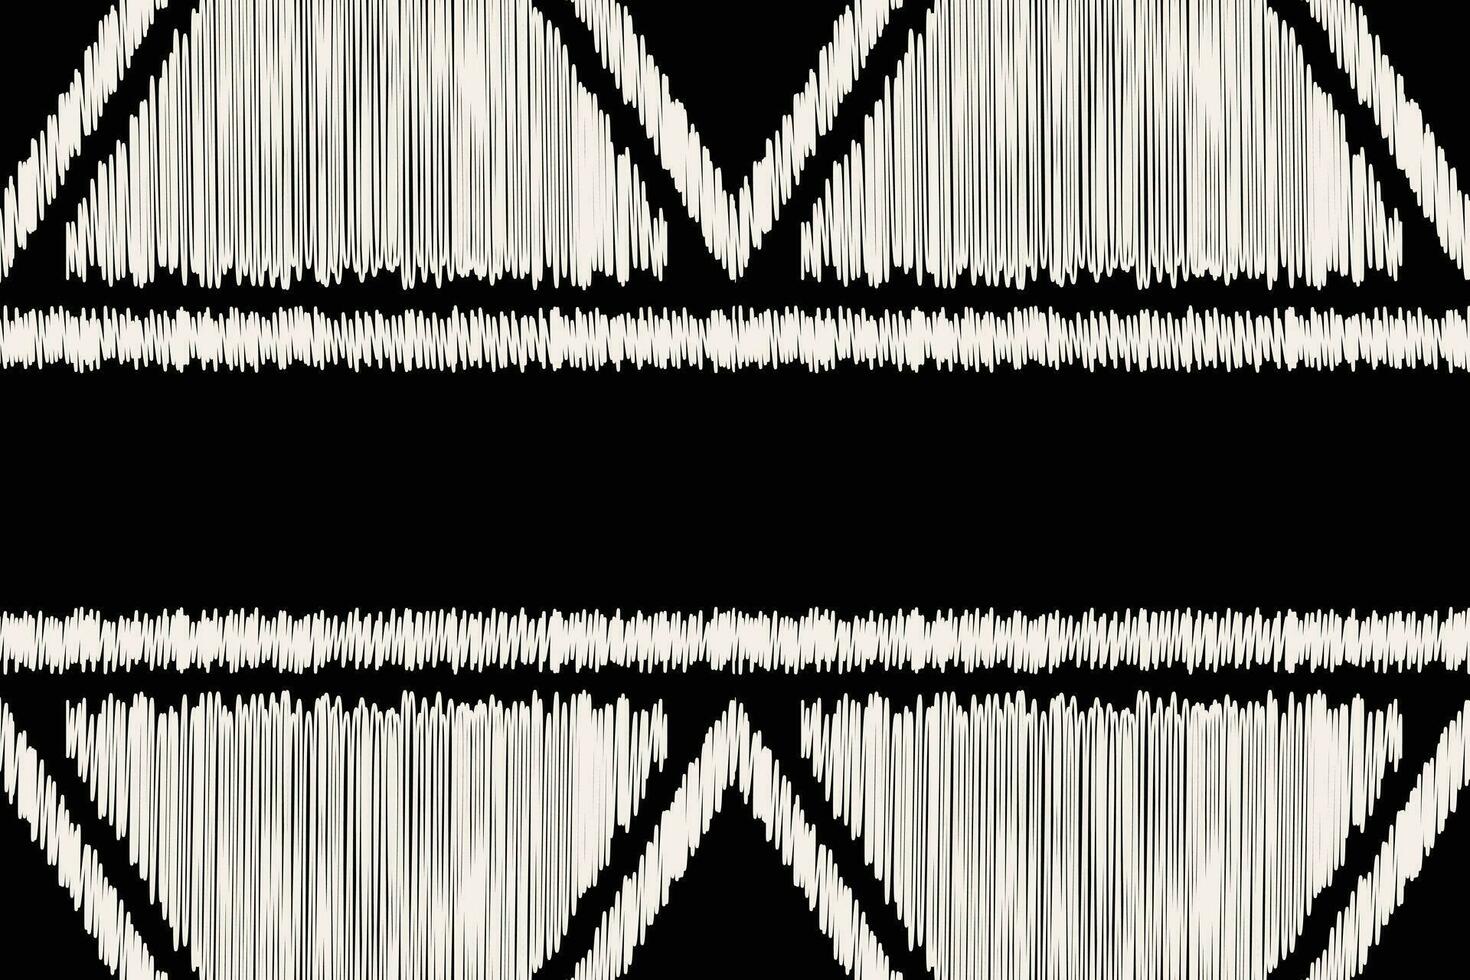 étnico ikat tela modelo geométrico estilo.africano ikat bordado étnico oriental modelo negro antecedentes. resumen,vector,ilustración.textura,ropa,marco,decoración,alfombra,motivo. vector